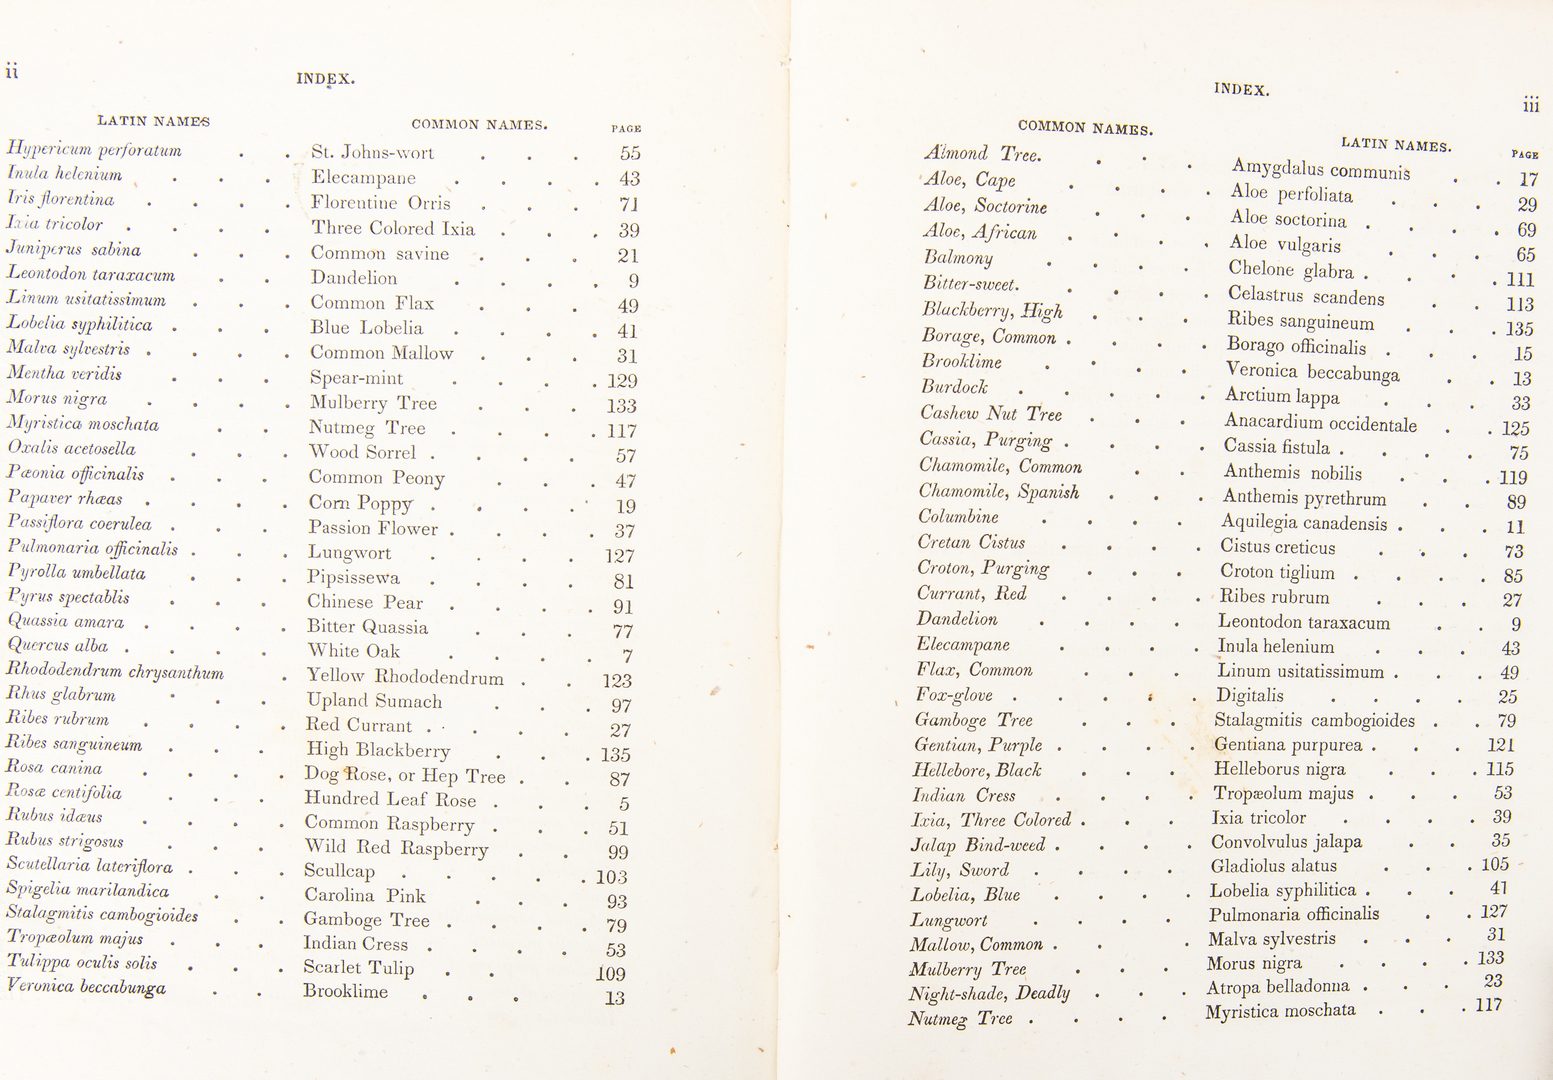 Lot 807: A. B. Strong, American Flora Vol. I & II, 1847-48